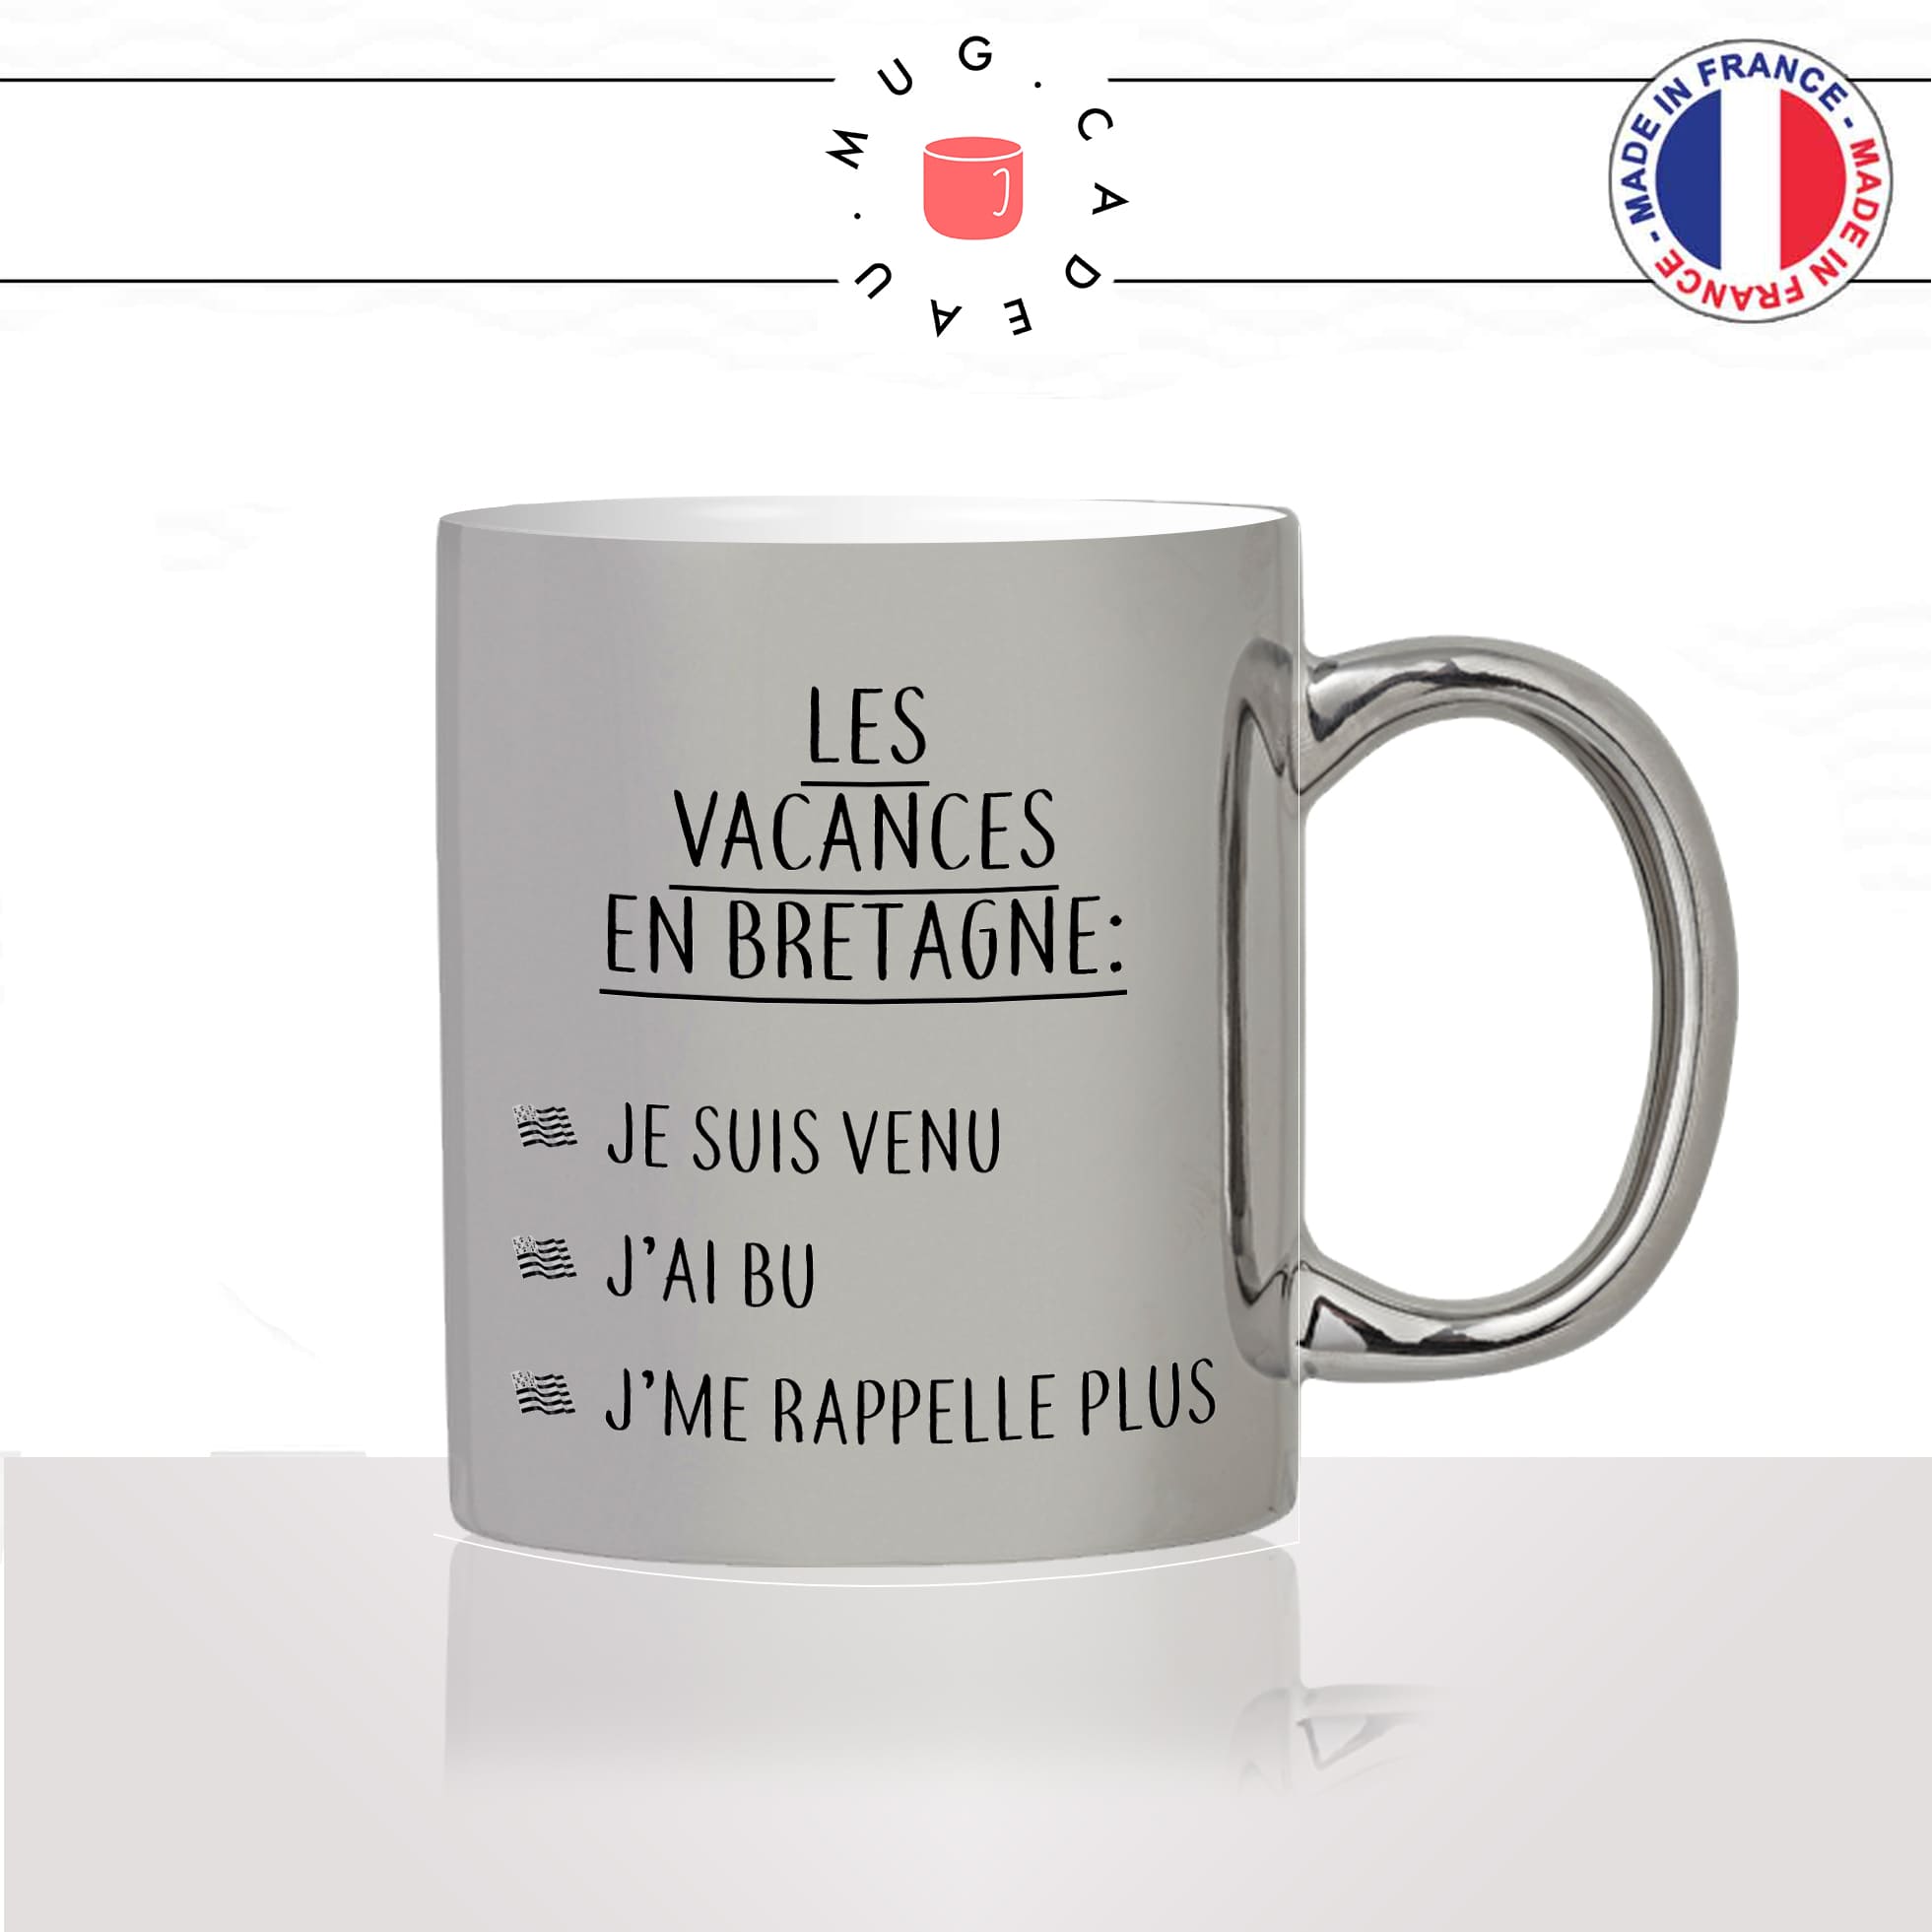 mug-tasse-argent-argenté-silver-vacances-en-bretagne-breton-apéro-jai-bu-rappelle-plus-humour-france-idée-cadeau-fun-cool-café-thé2